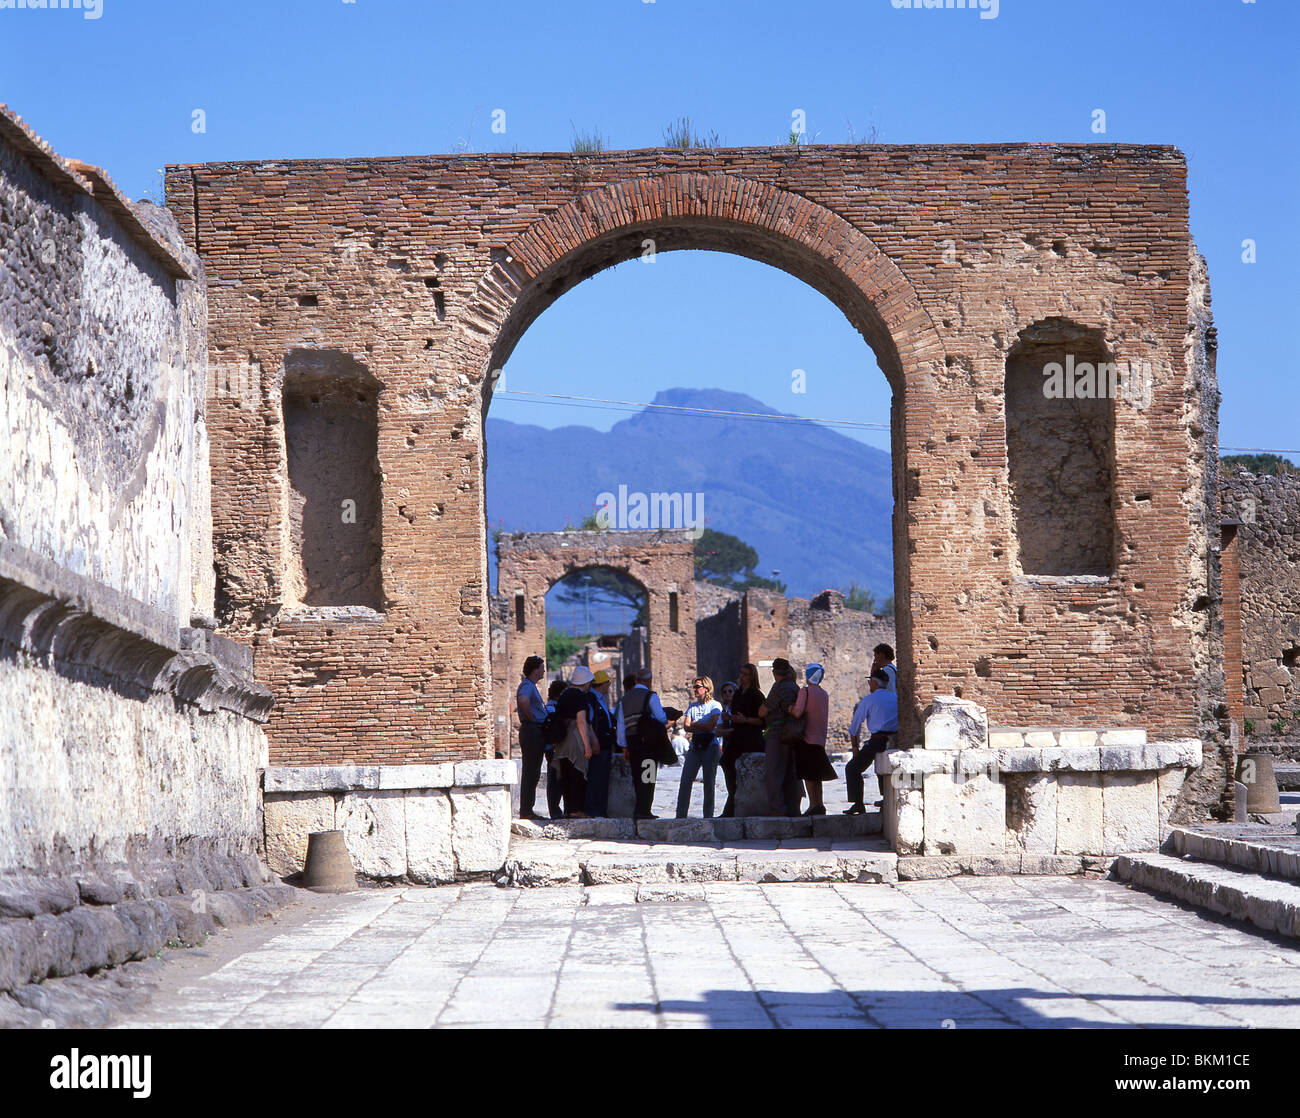 Vue sur l'arche de célébration montrant le Vésuve, l'ancienne ville de Pompéi, Pompéi, la ville métropolitaine de Naples, la région de Campanie, Italie Banque D'Images